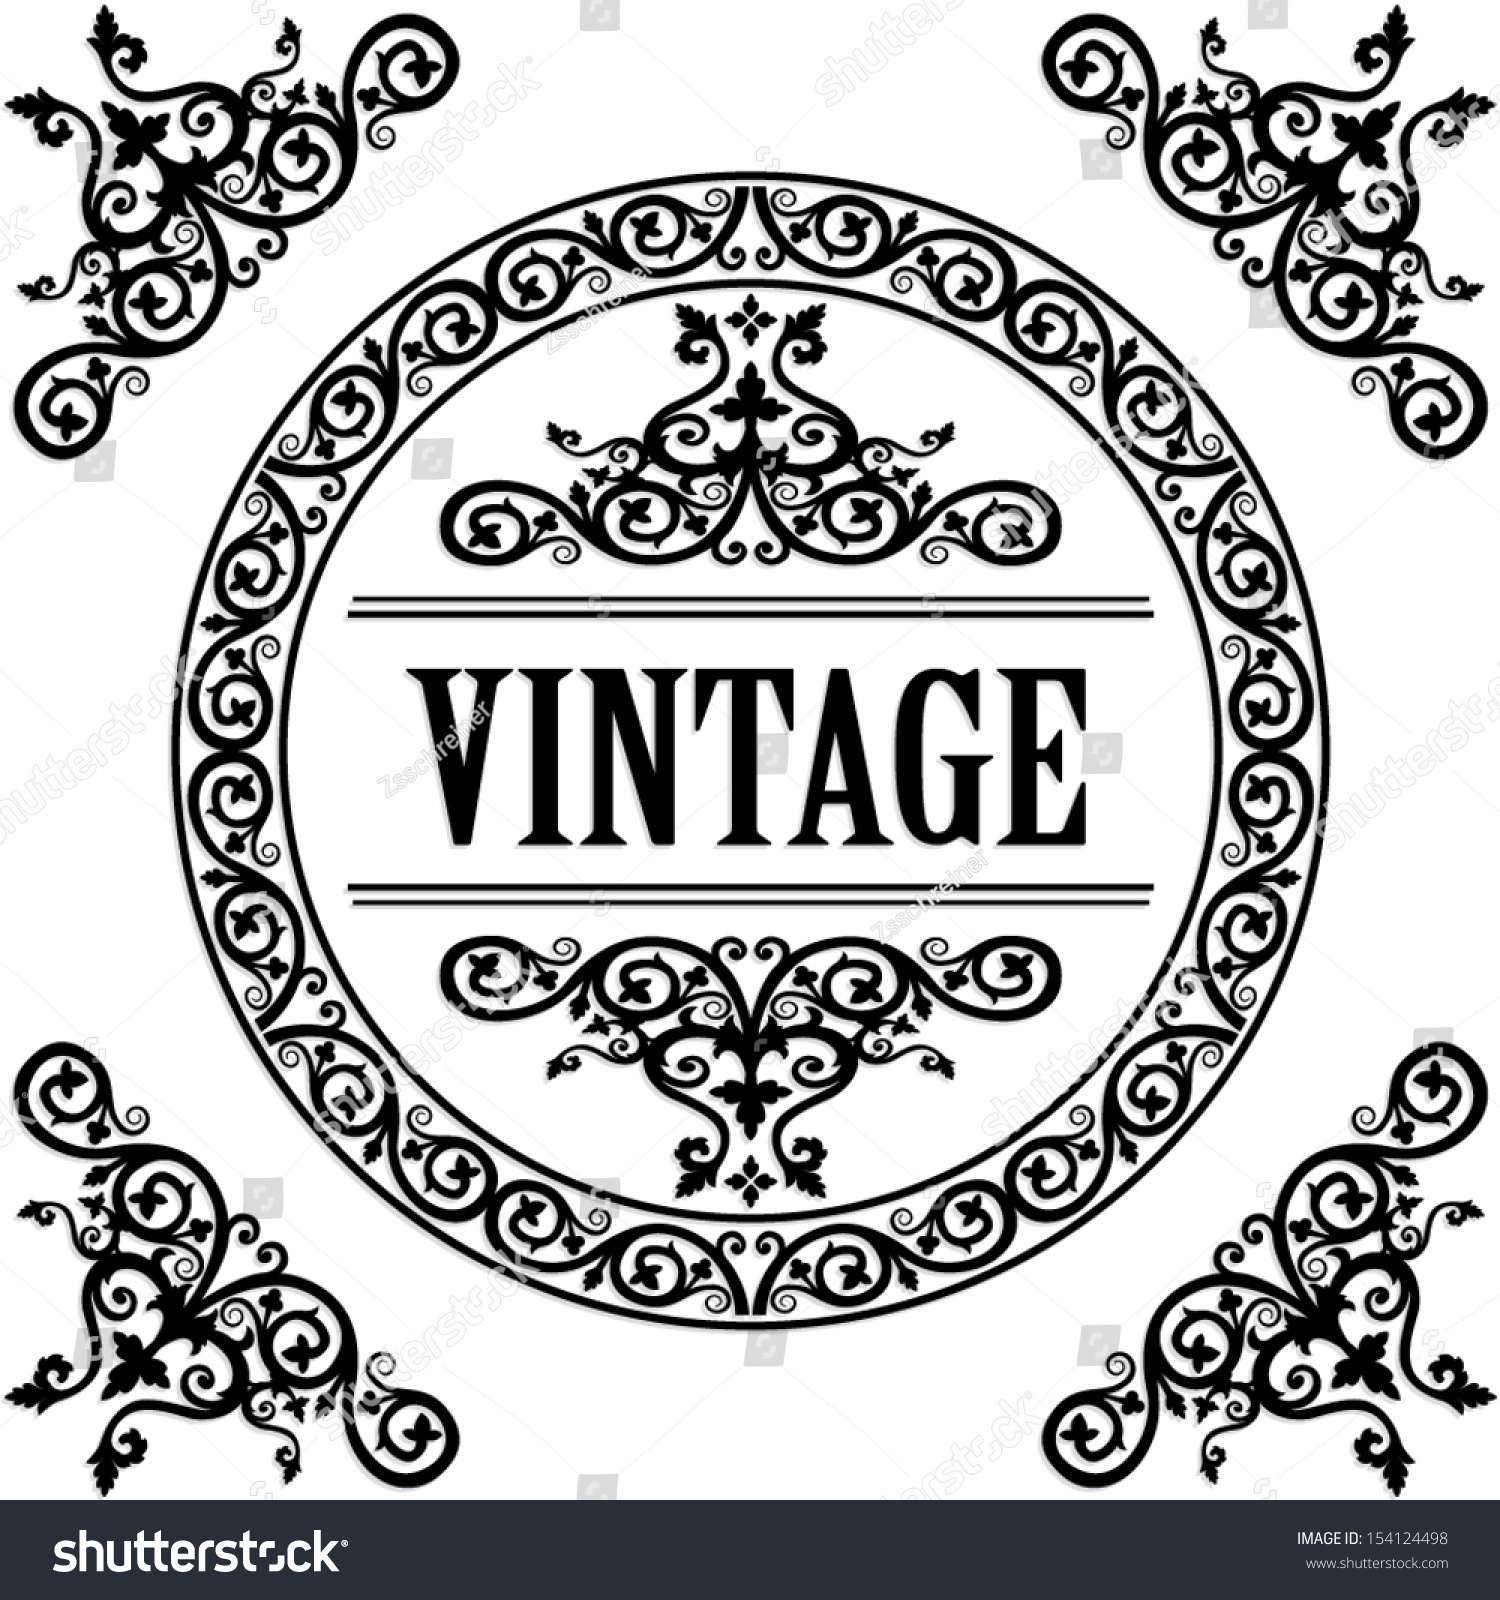 Download Ornamental Circle Frame Vintage Vector Illustration Stock Vector 154124498 - Shutterstock